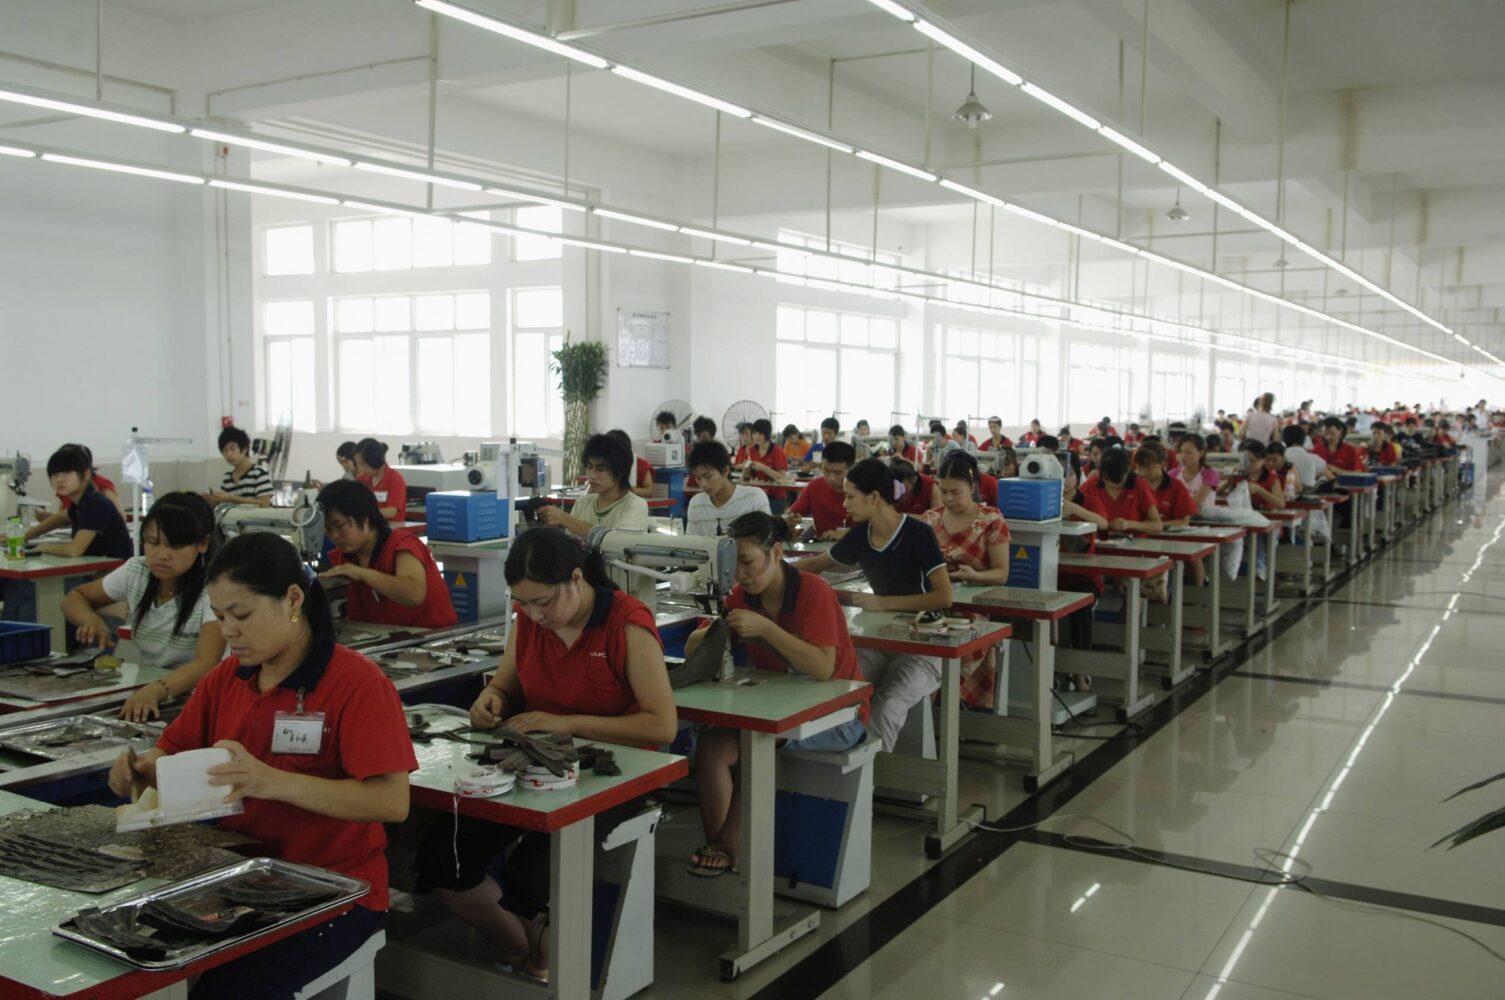 Tekstilarbeidere ved en skofabrikk i Kina.